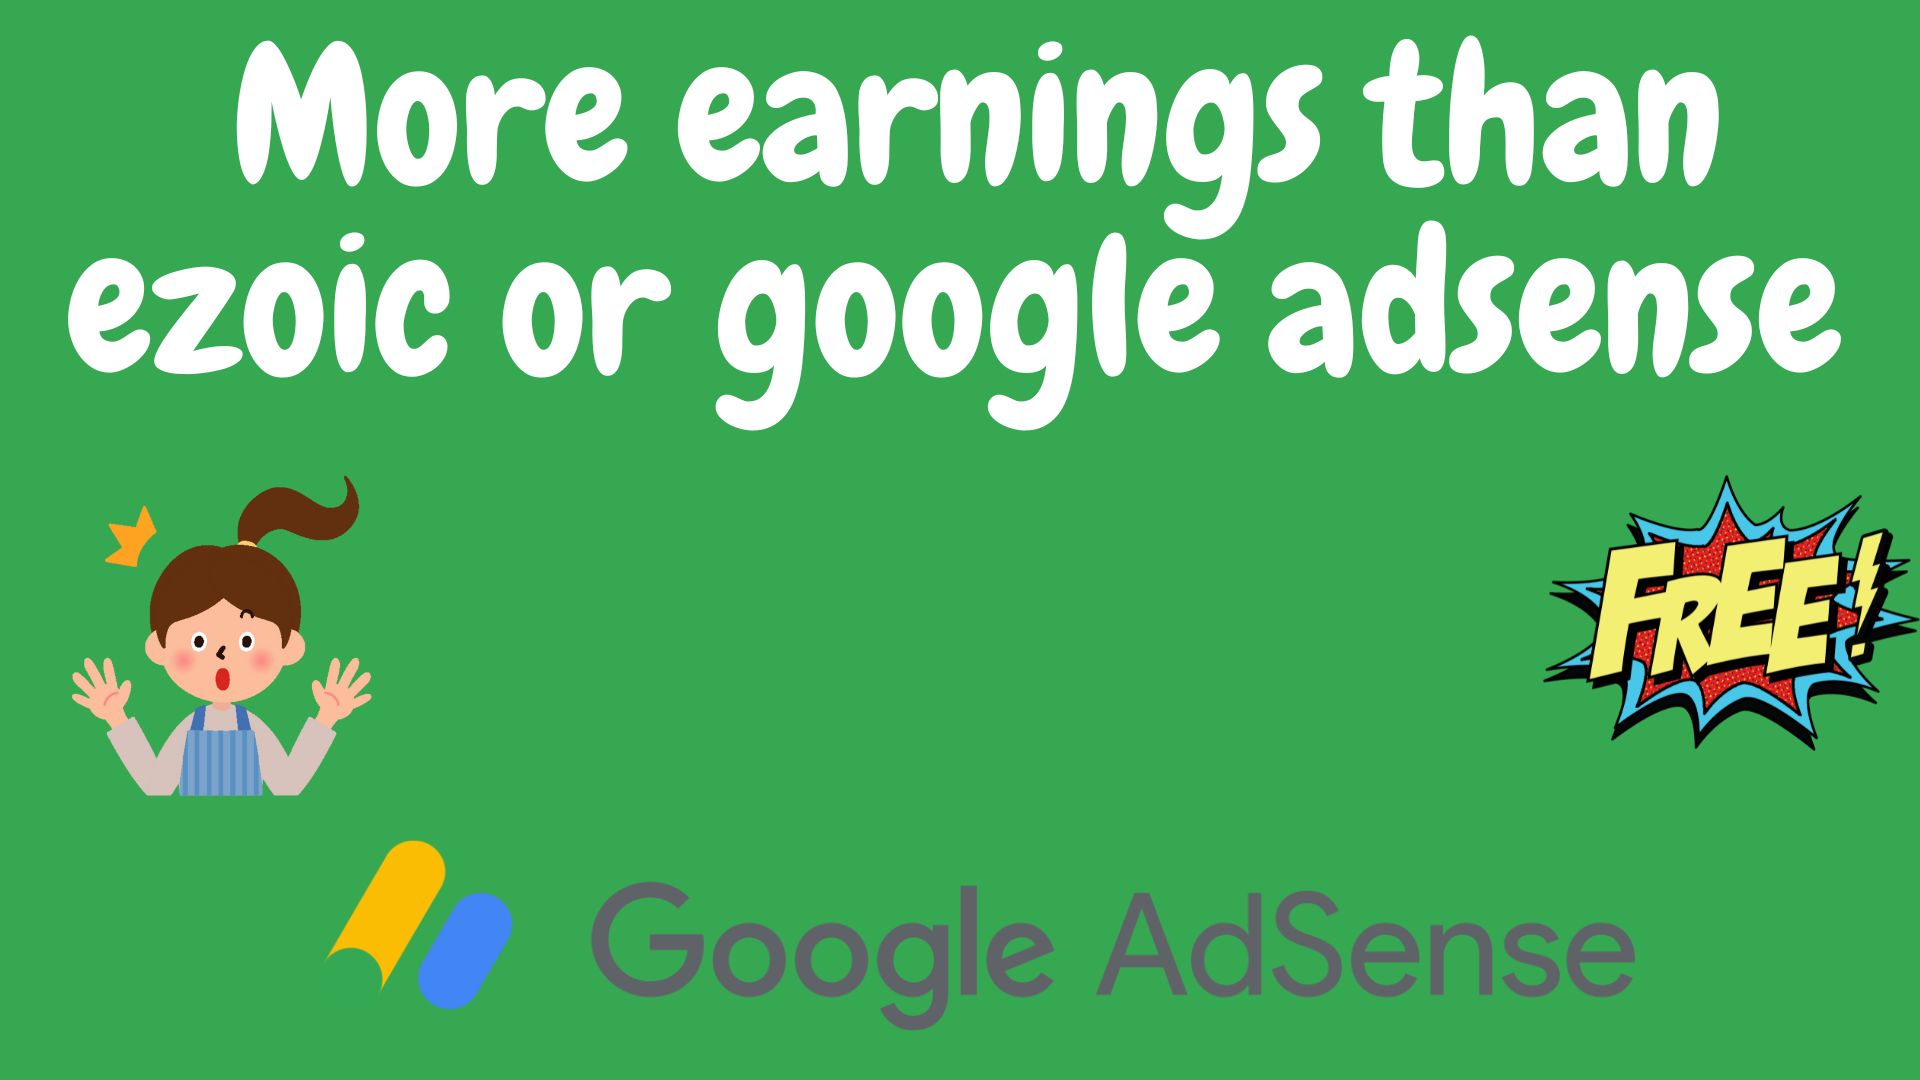 More earnings than ezoic or google adsense 